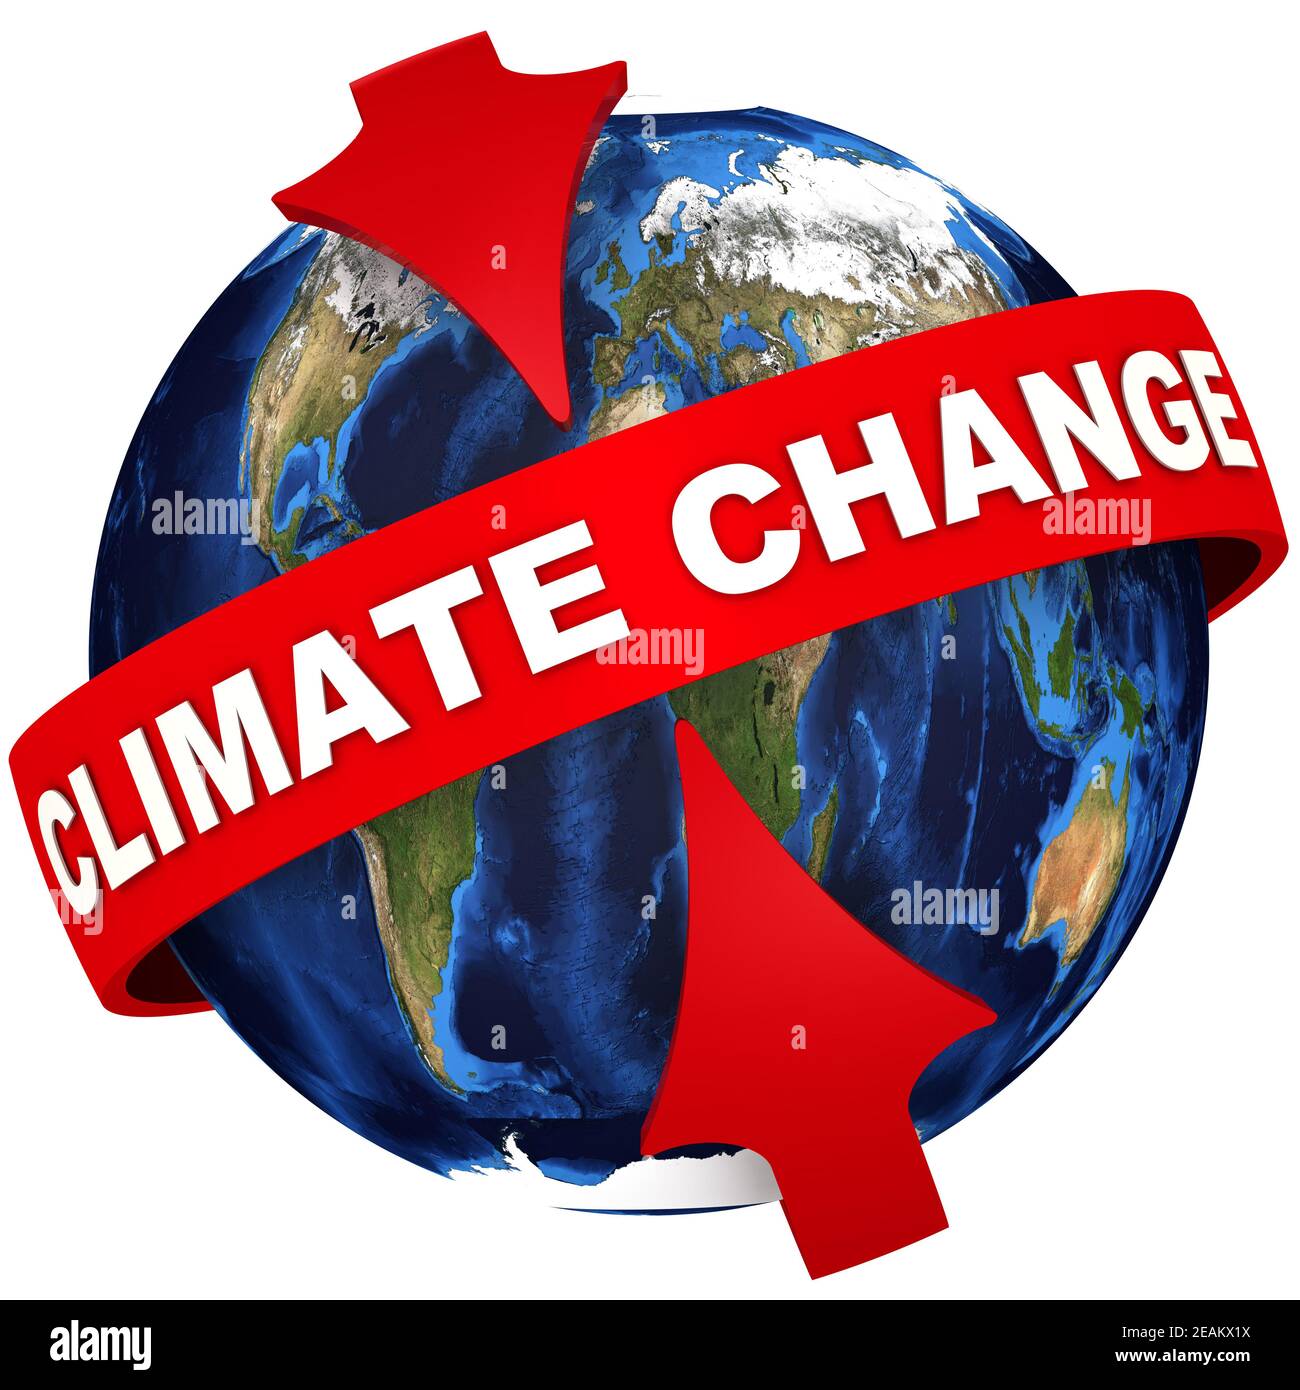 Thay đổi khí hậu toàn cầu đang gây ra nhiều tác động xấu đến hành tinh của chúng ta. Hãy cùng xem ảnh và tìm hiểu về một số giải pháp có thể giúp giảm thiểu tác động của thay đổi khí hậu này.